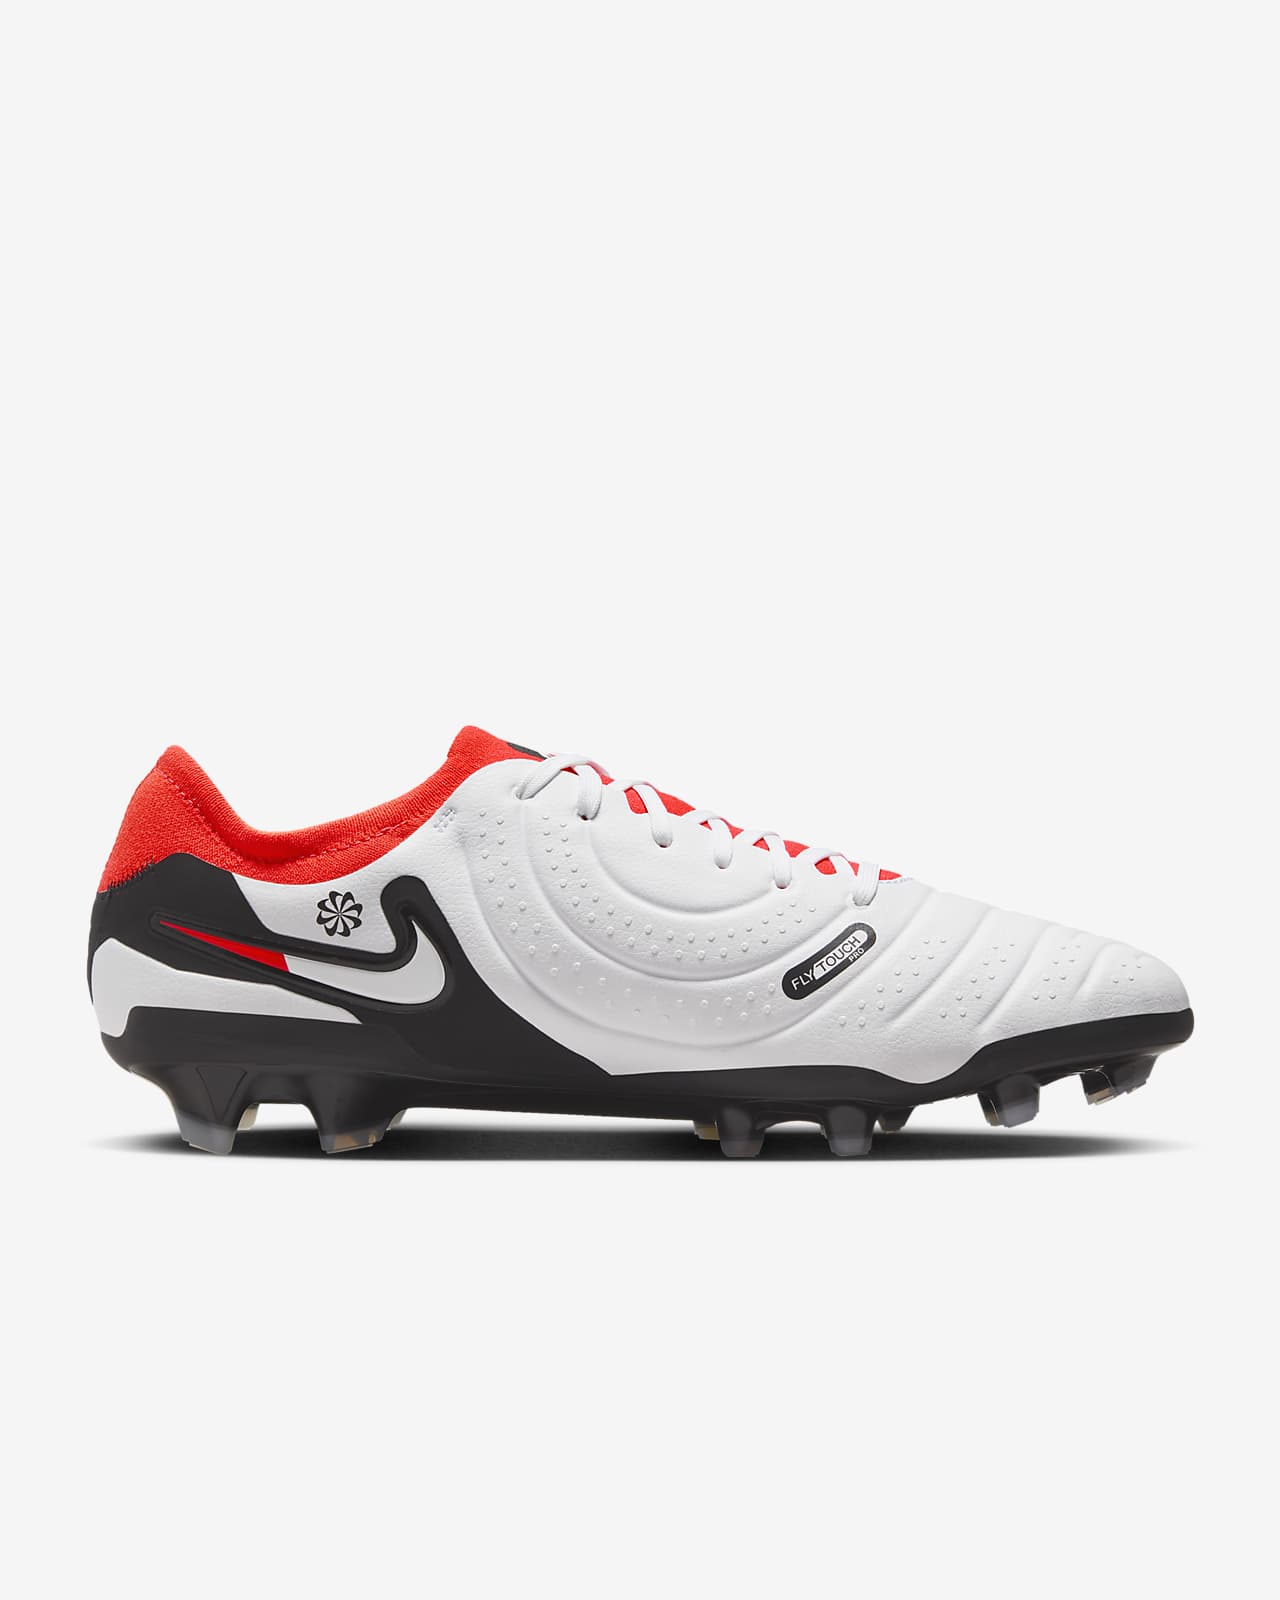 Nietje toewijzen huren Nike Tiempo Legend 10 Pro voetbalschoenen (stevige ondergrond). Nike NL